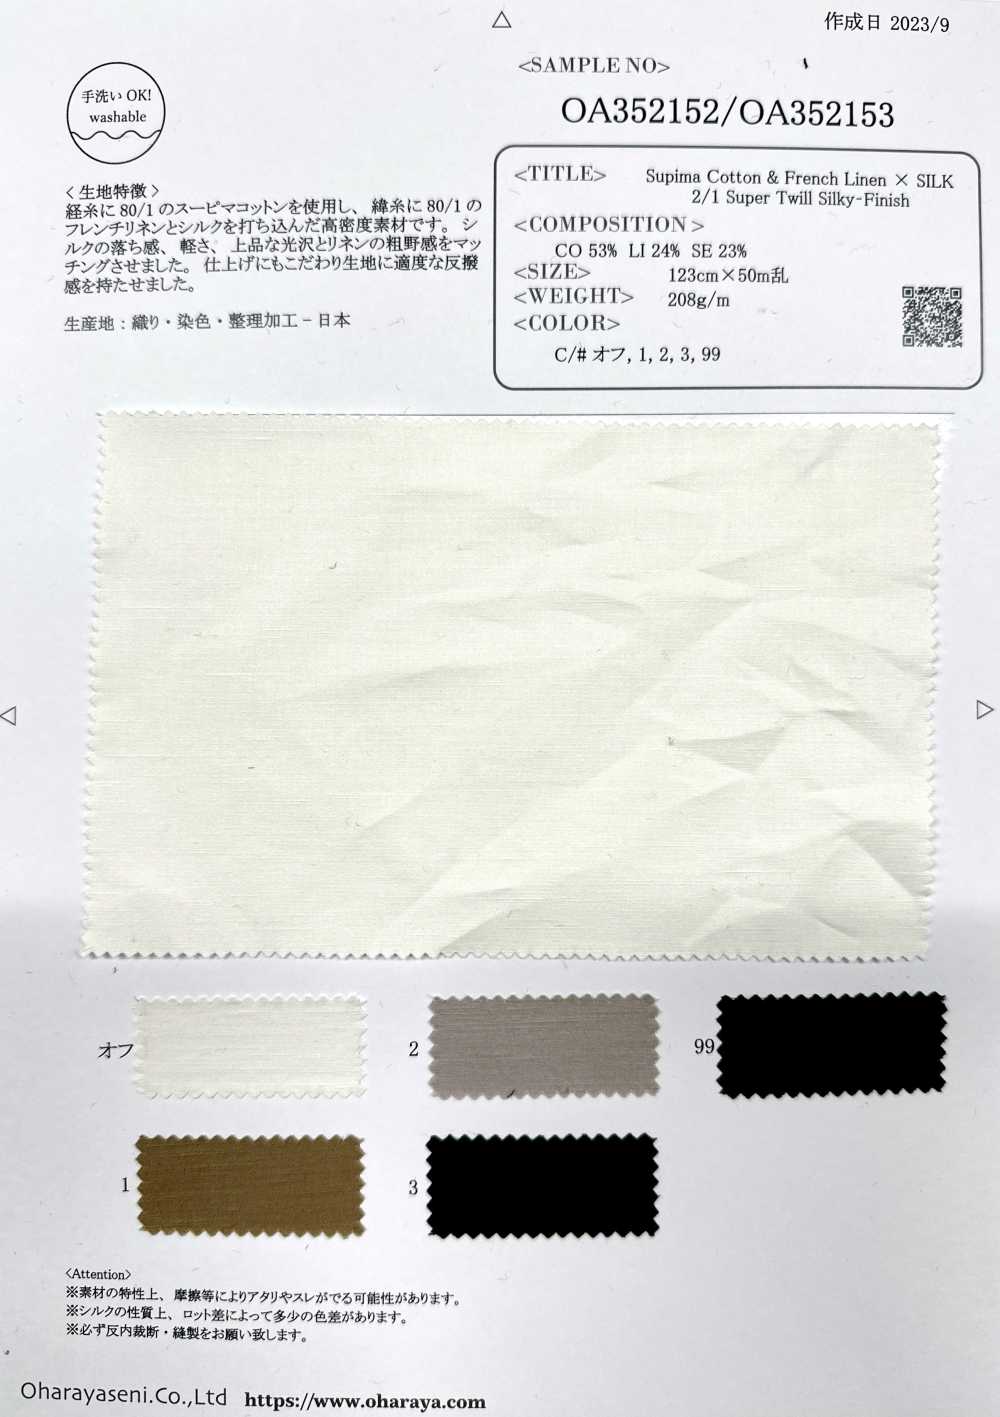 OA352153 苏比马棉 & 法国亚麻 × SILK 2/1 超级斜纹丝光饰面[面料] 小原屋繊維